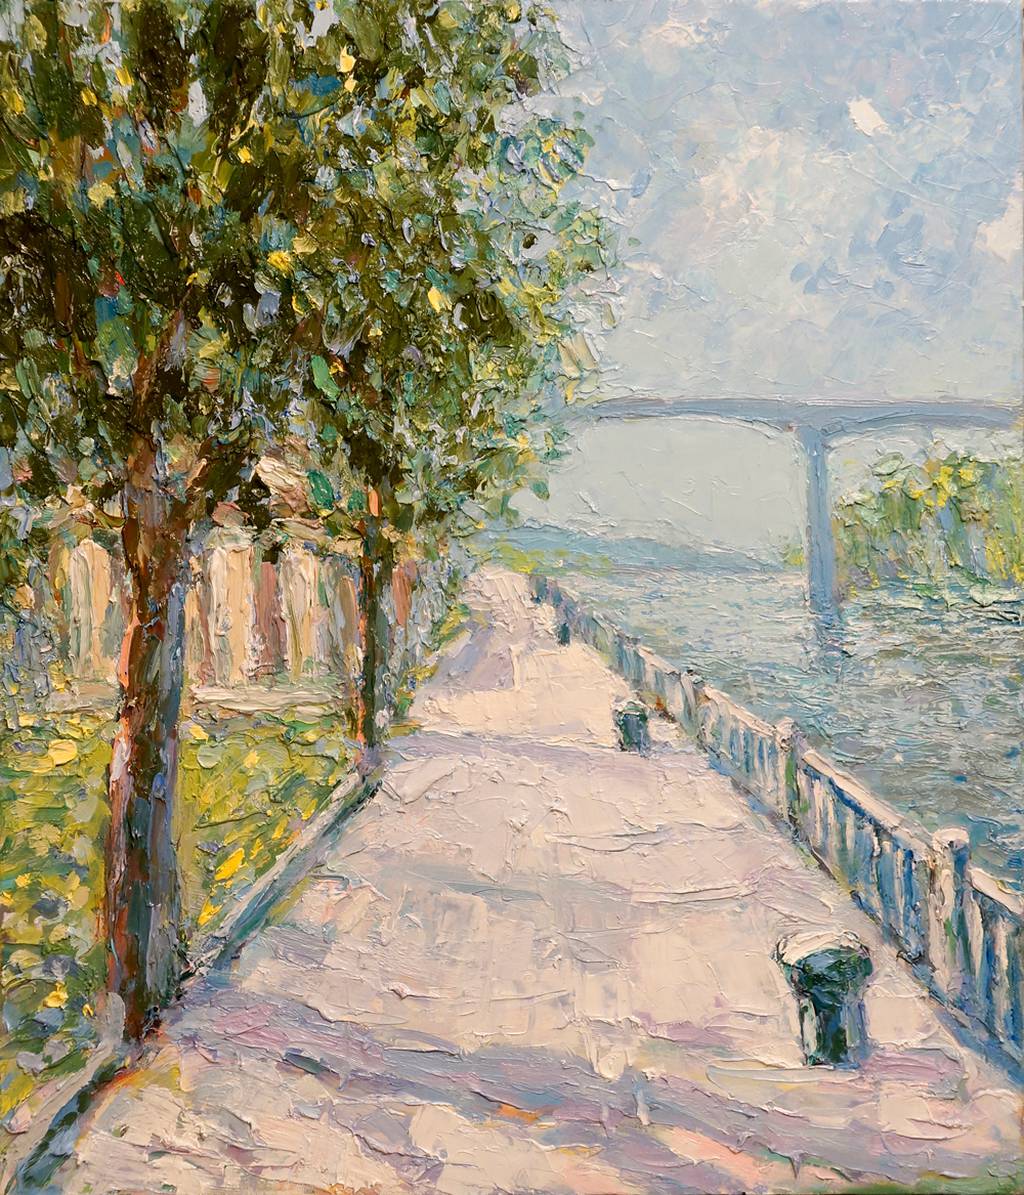 Promenade 2, 70x60cm., oil on canvas, 2015